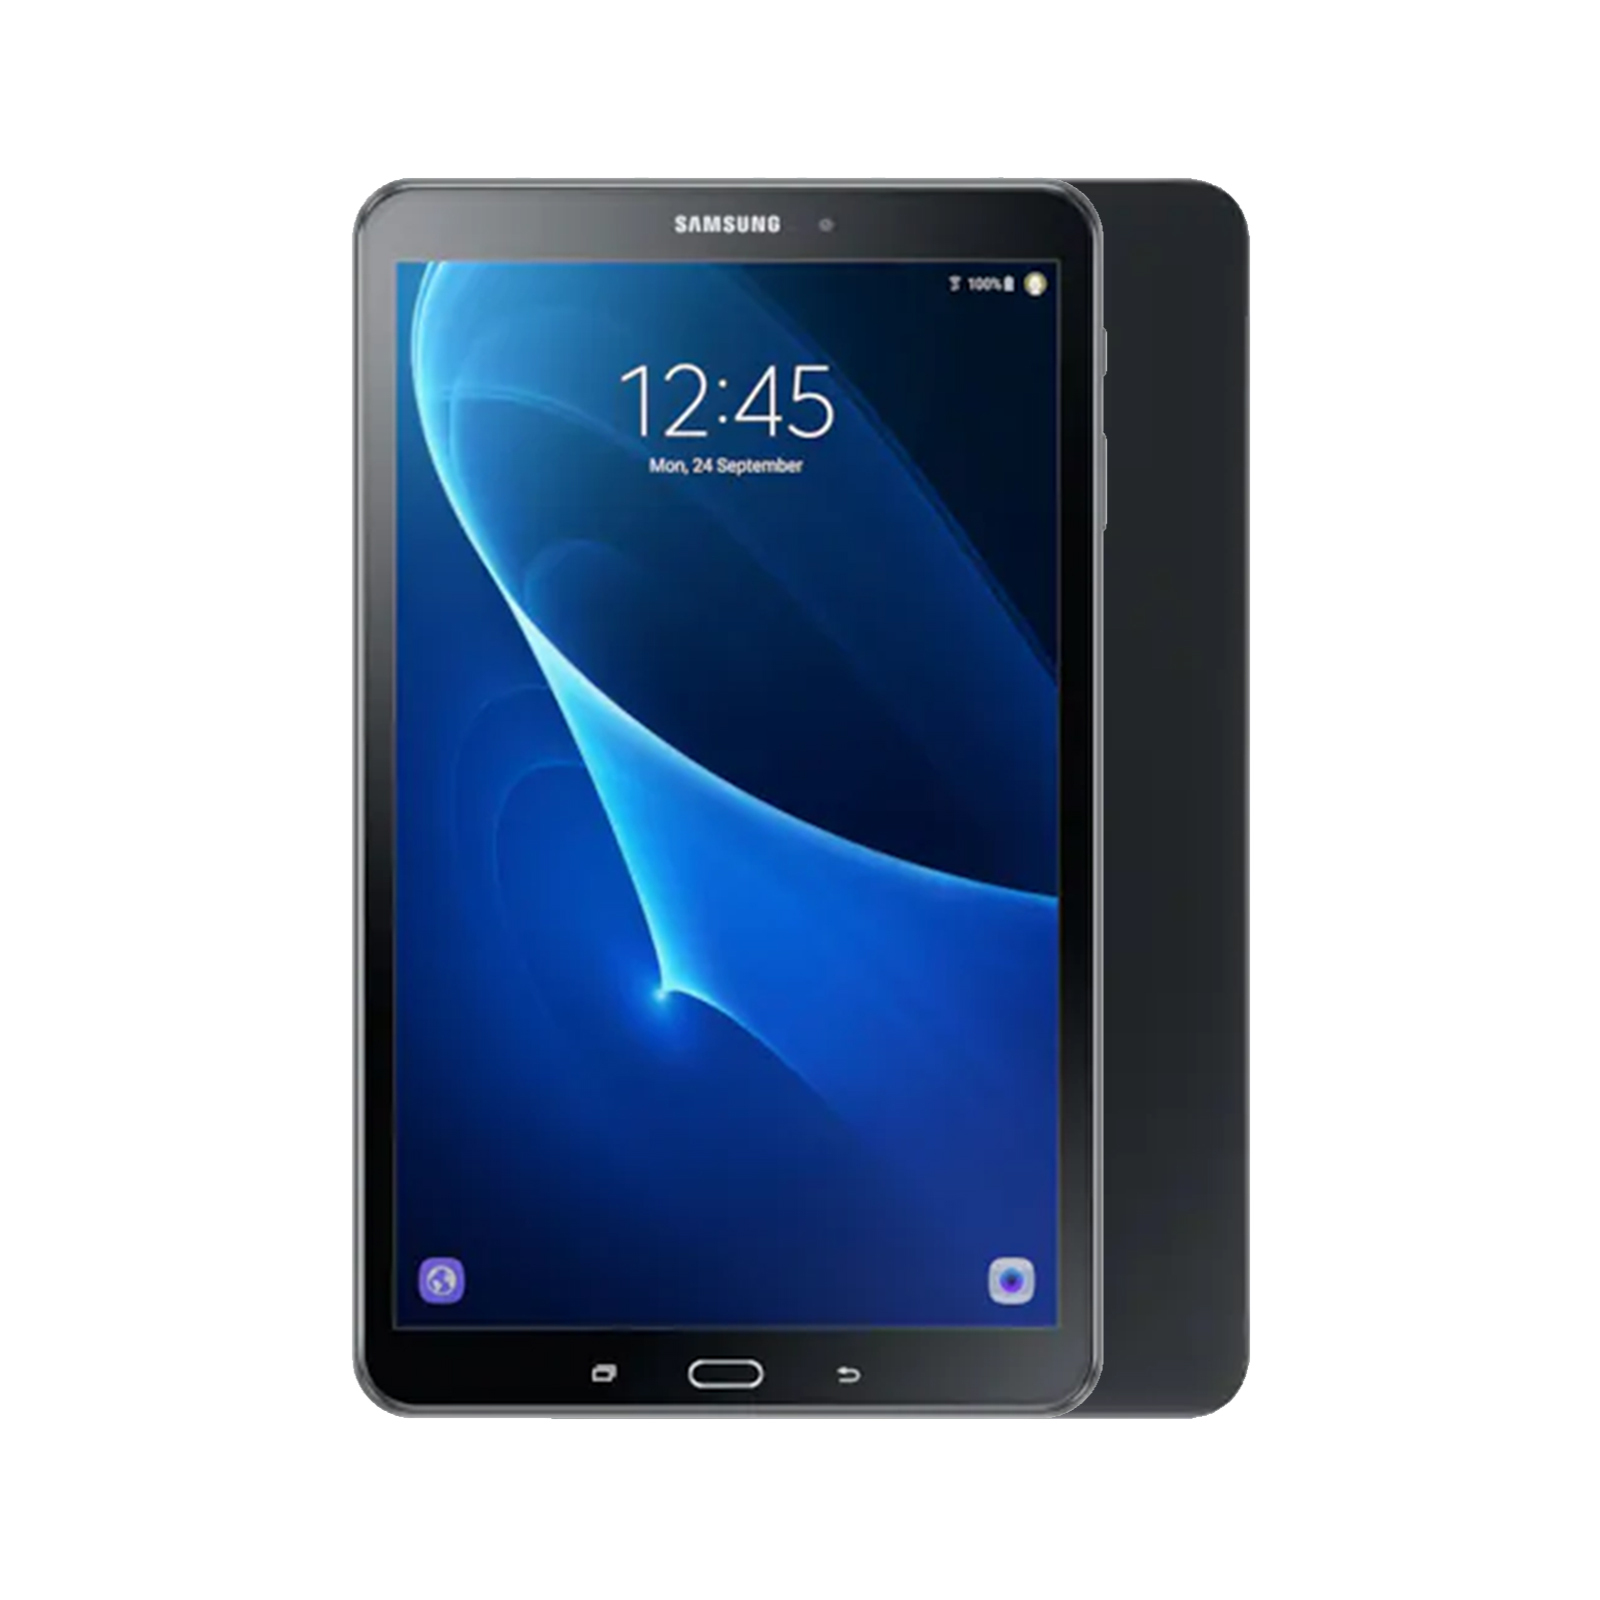 Samsung Galaxy Tab A 10.1 (2019) [WiFi] [16GB] [Black] [As New]